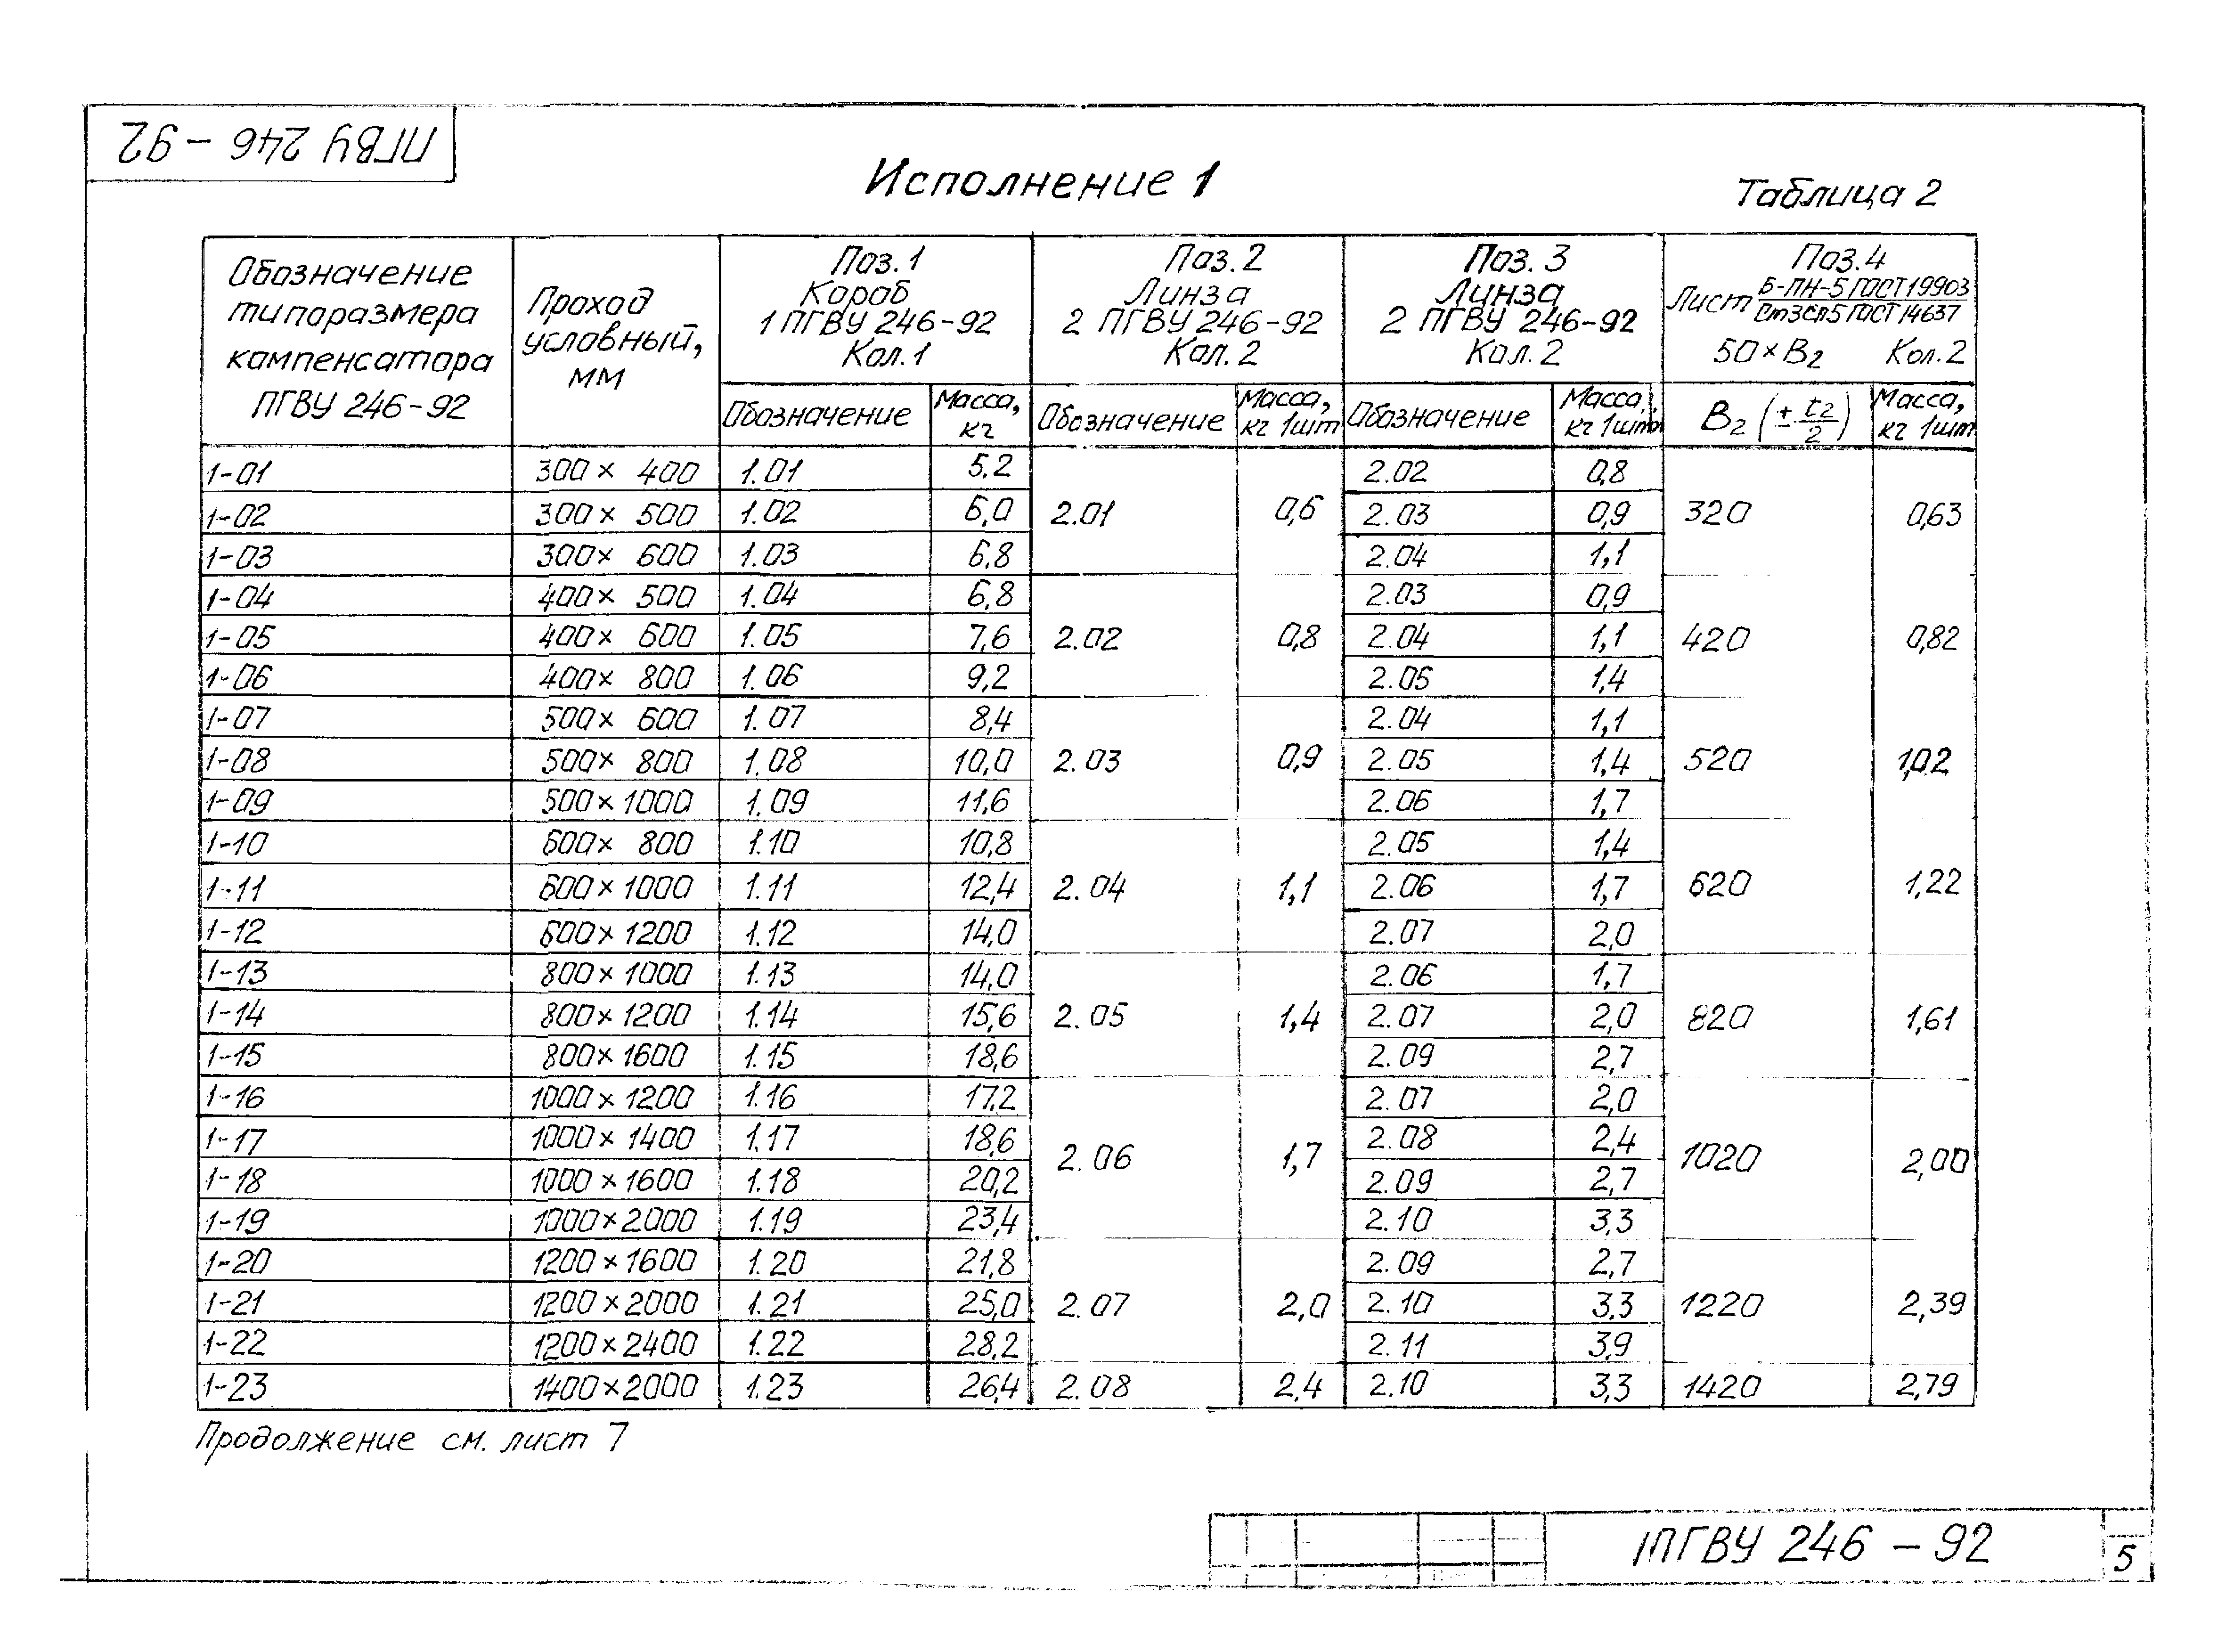 ПГВУ 246-92